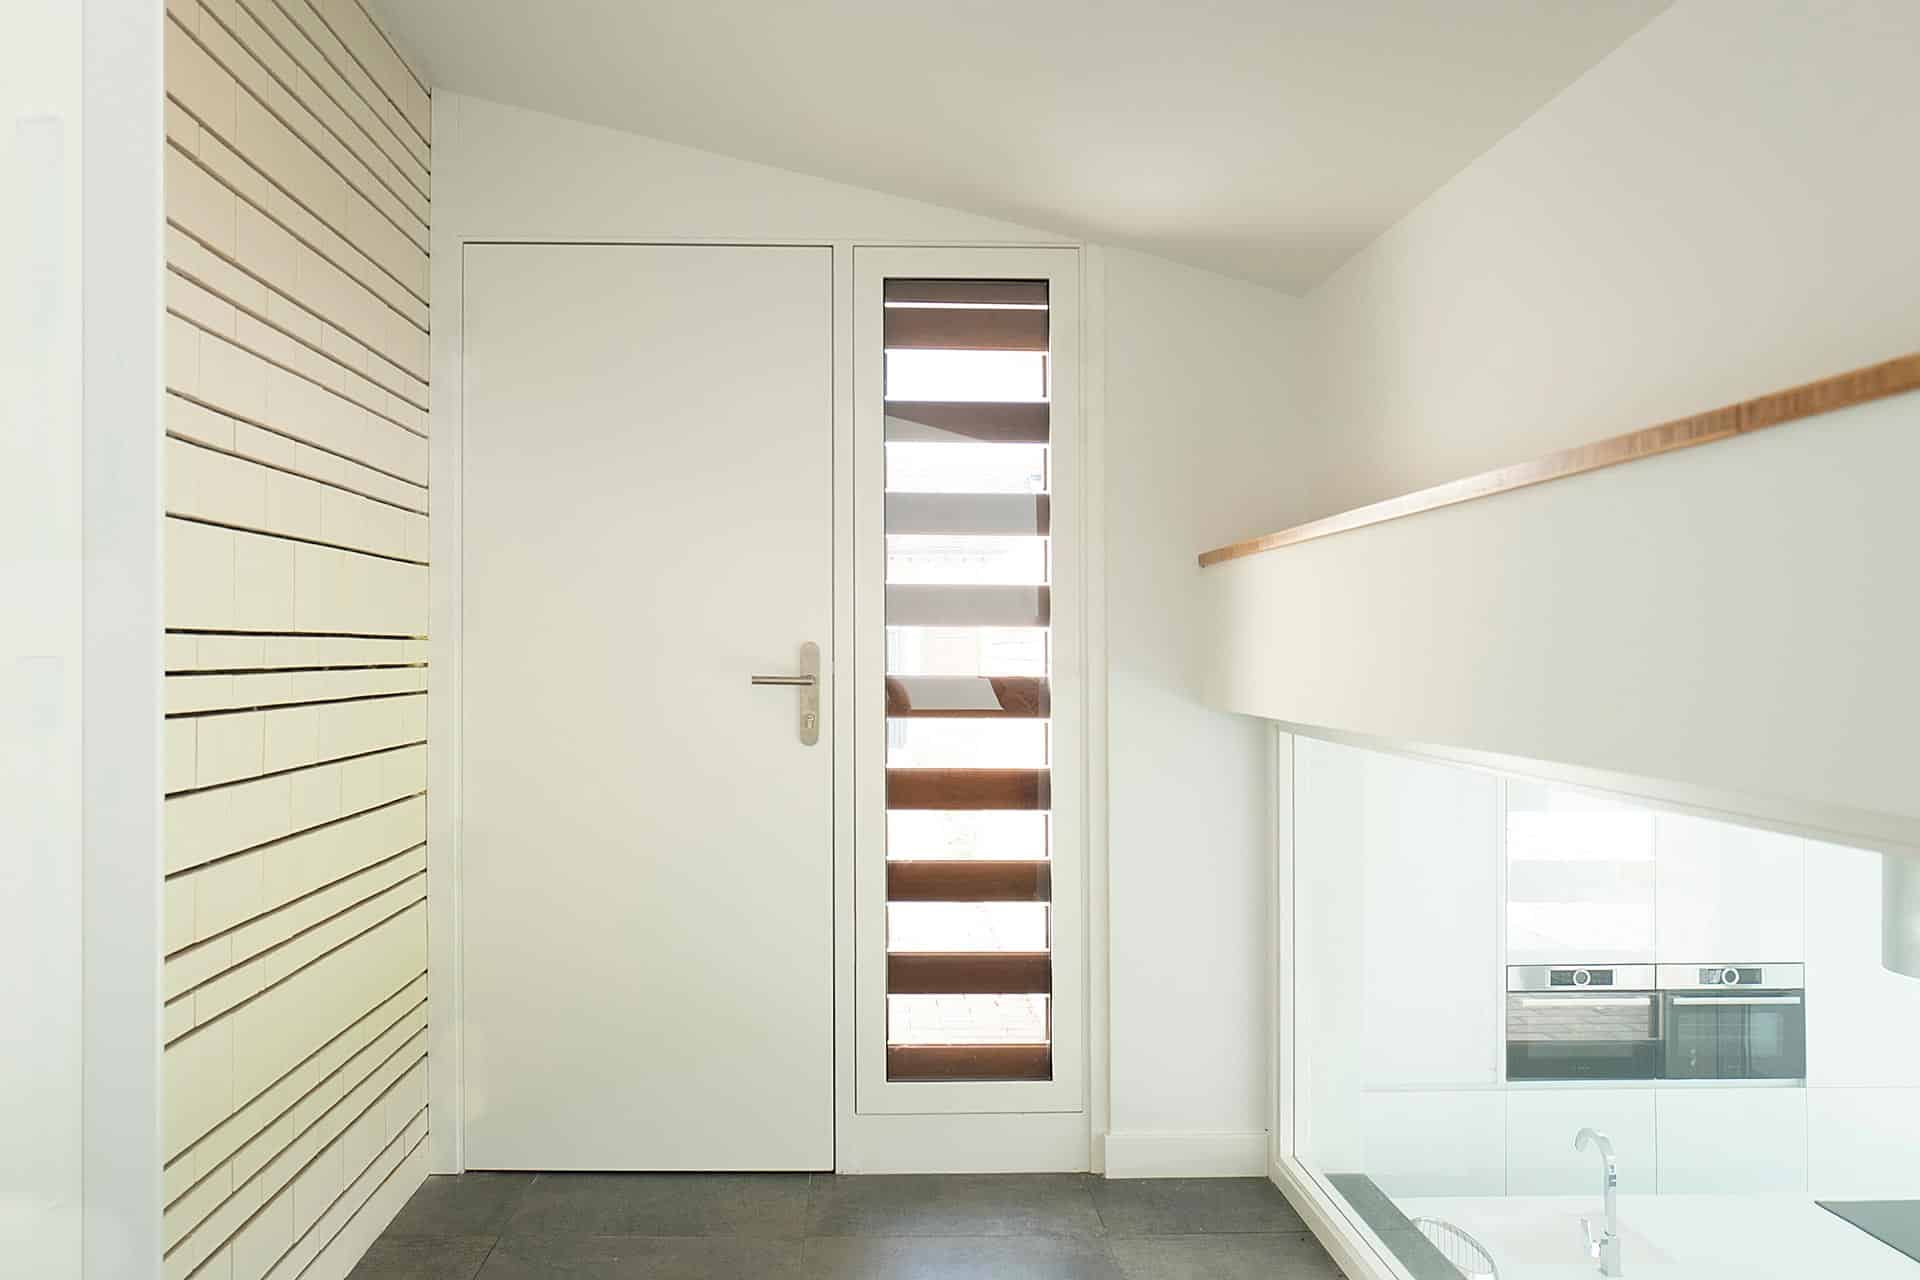 Vestíbulo de acceso blanco diseñado por Moah Arquitectos en Cantabria